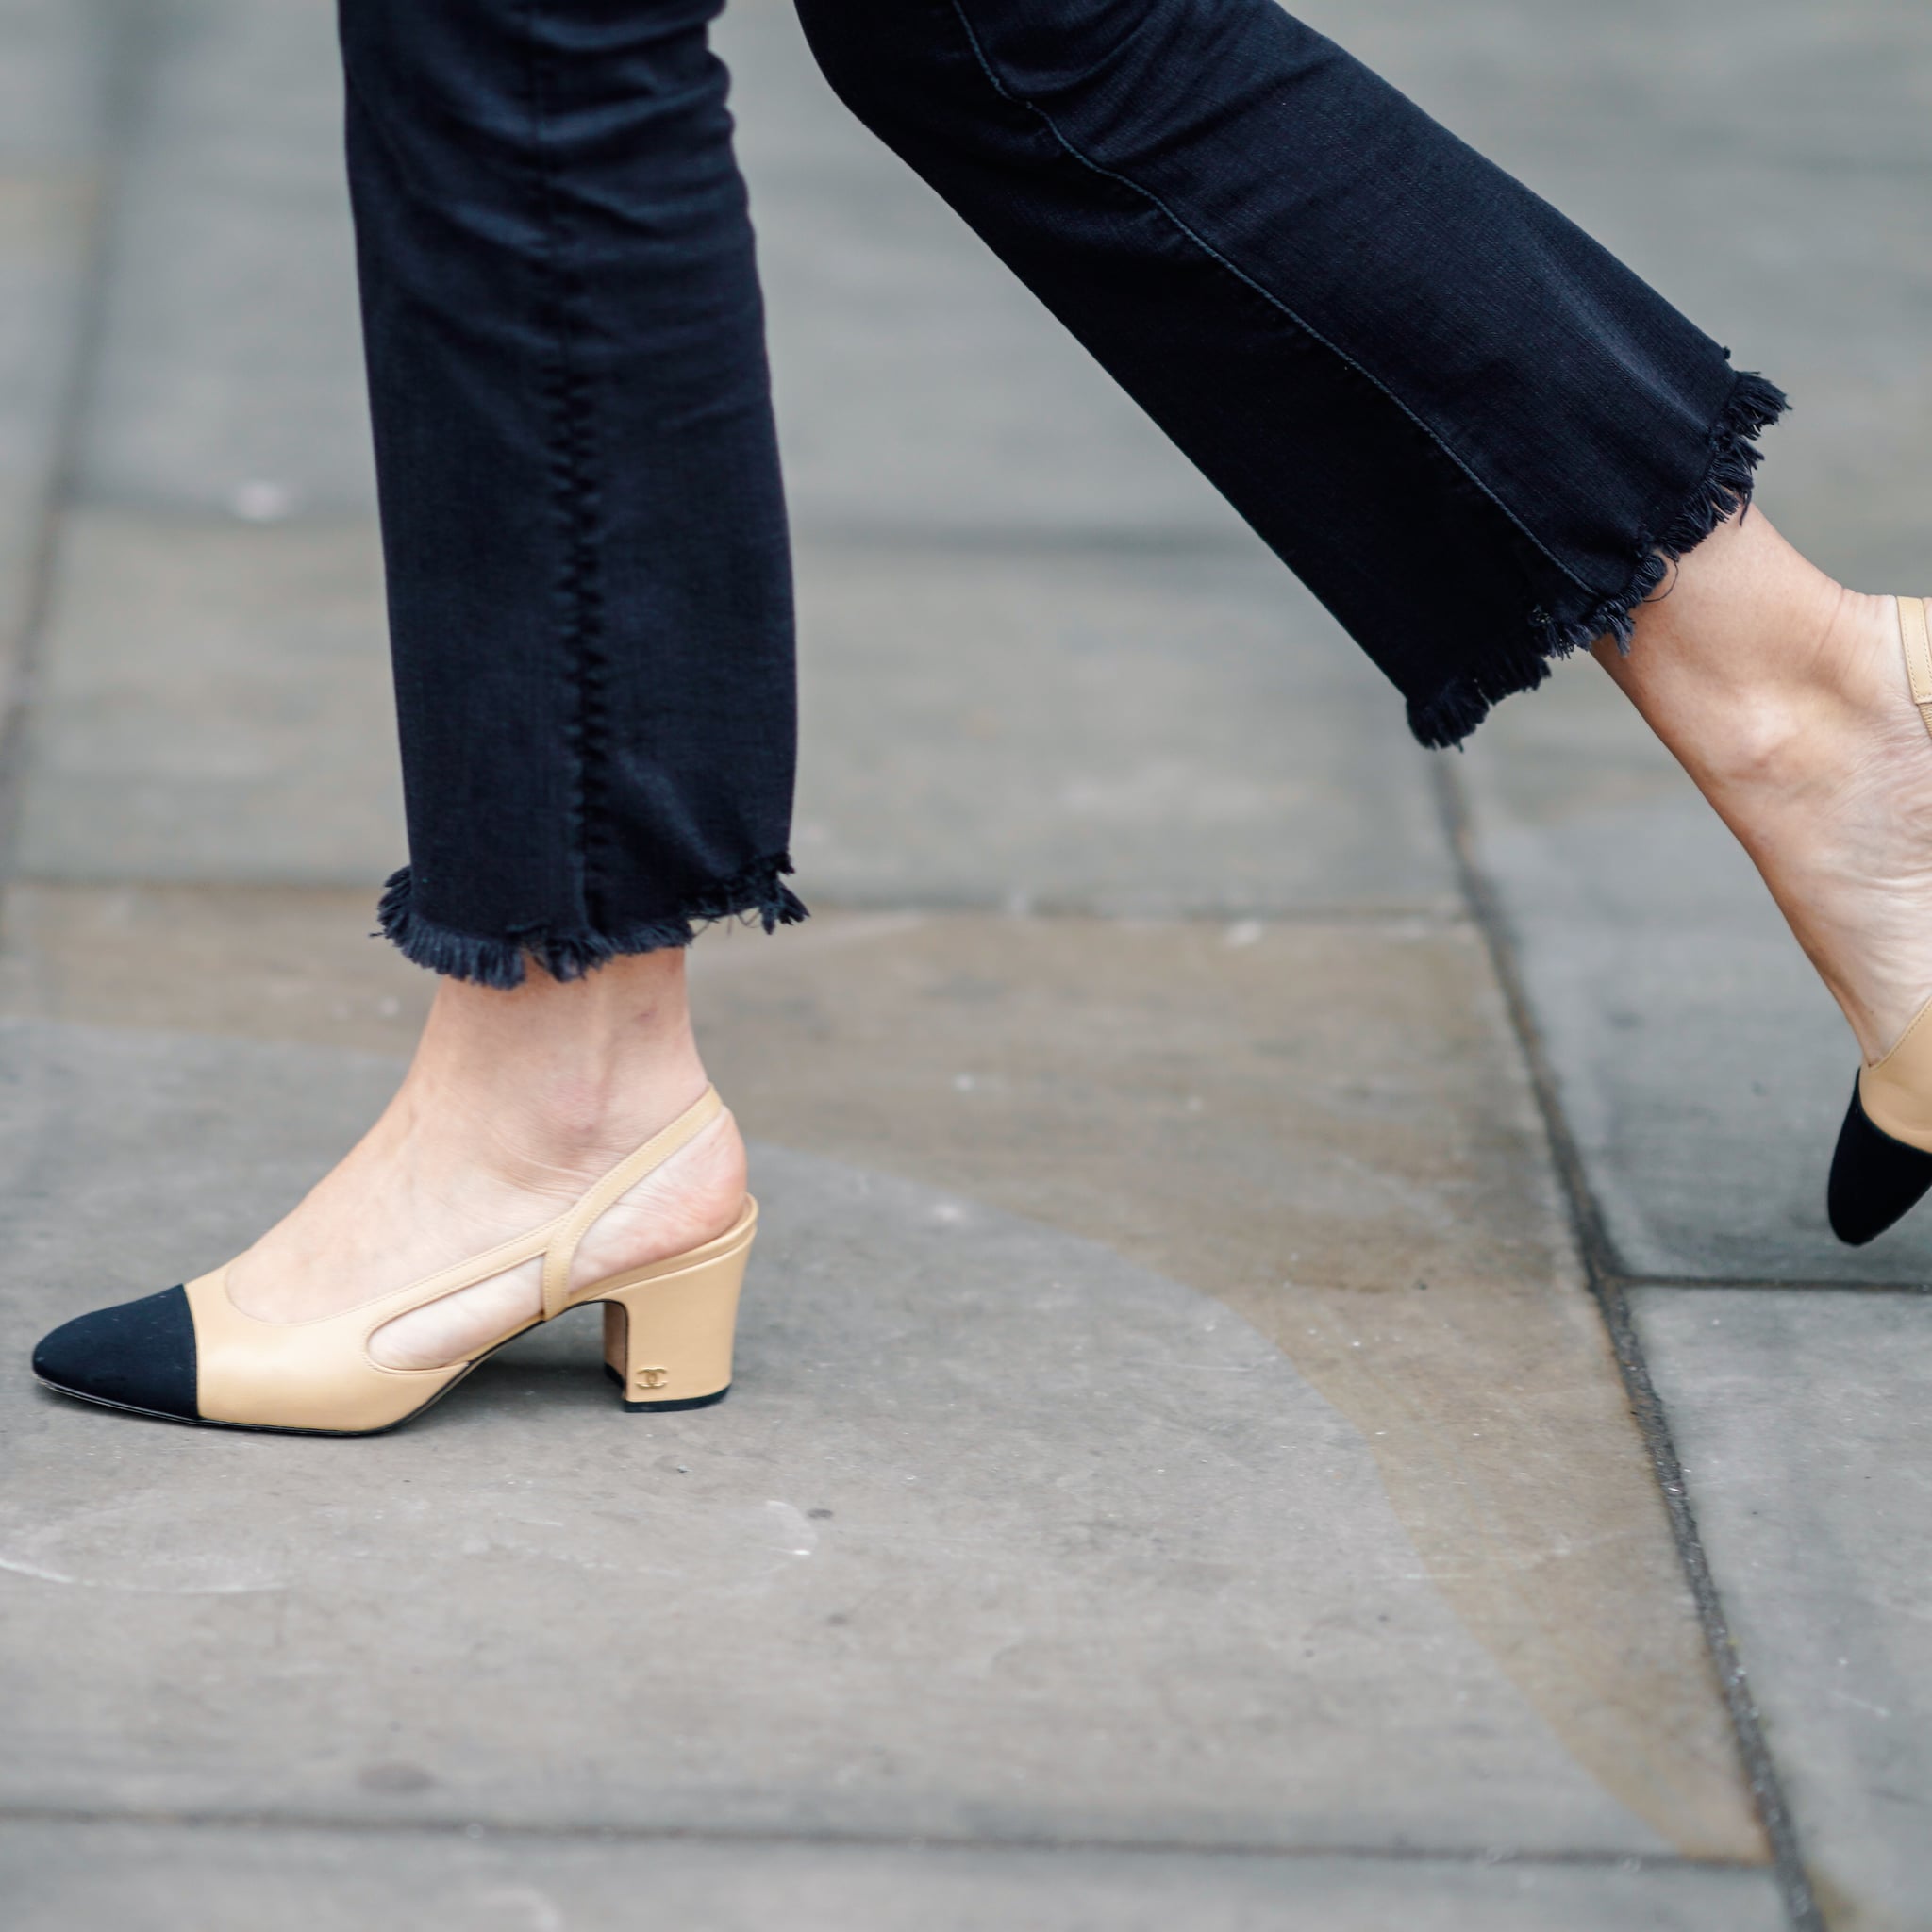 comfortable women's heels for work